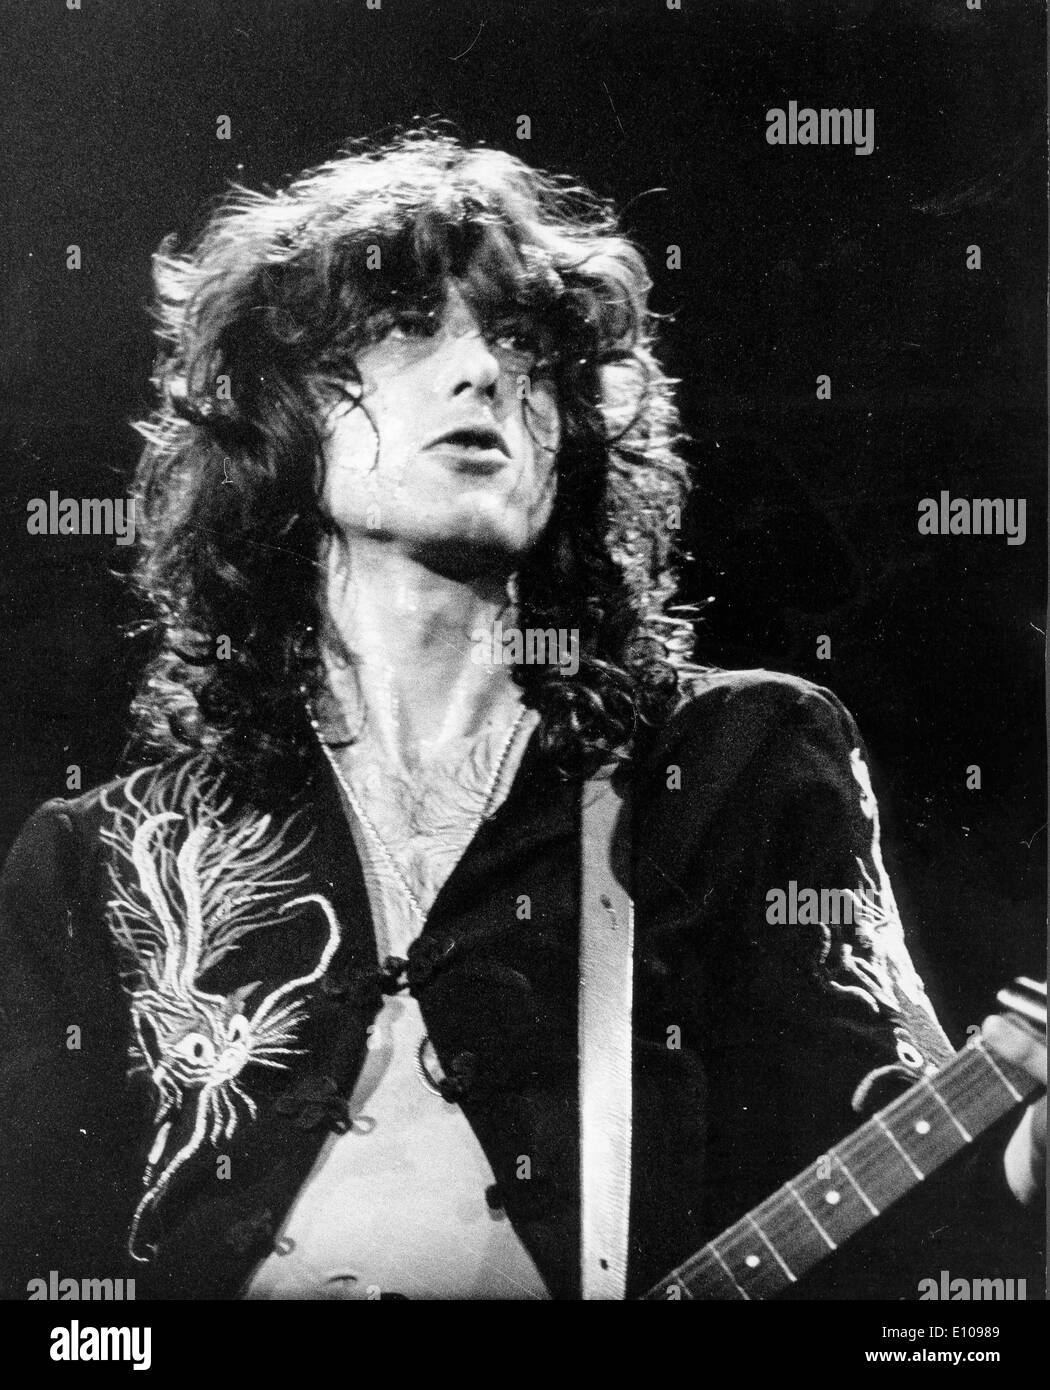 Le guitariste Jimmy Page de Led Zeppelin en concert Photo Stock - Alamy